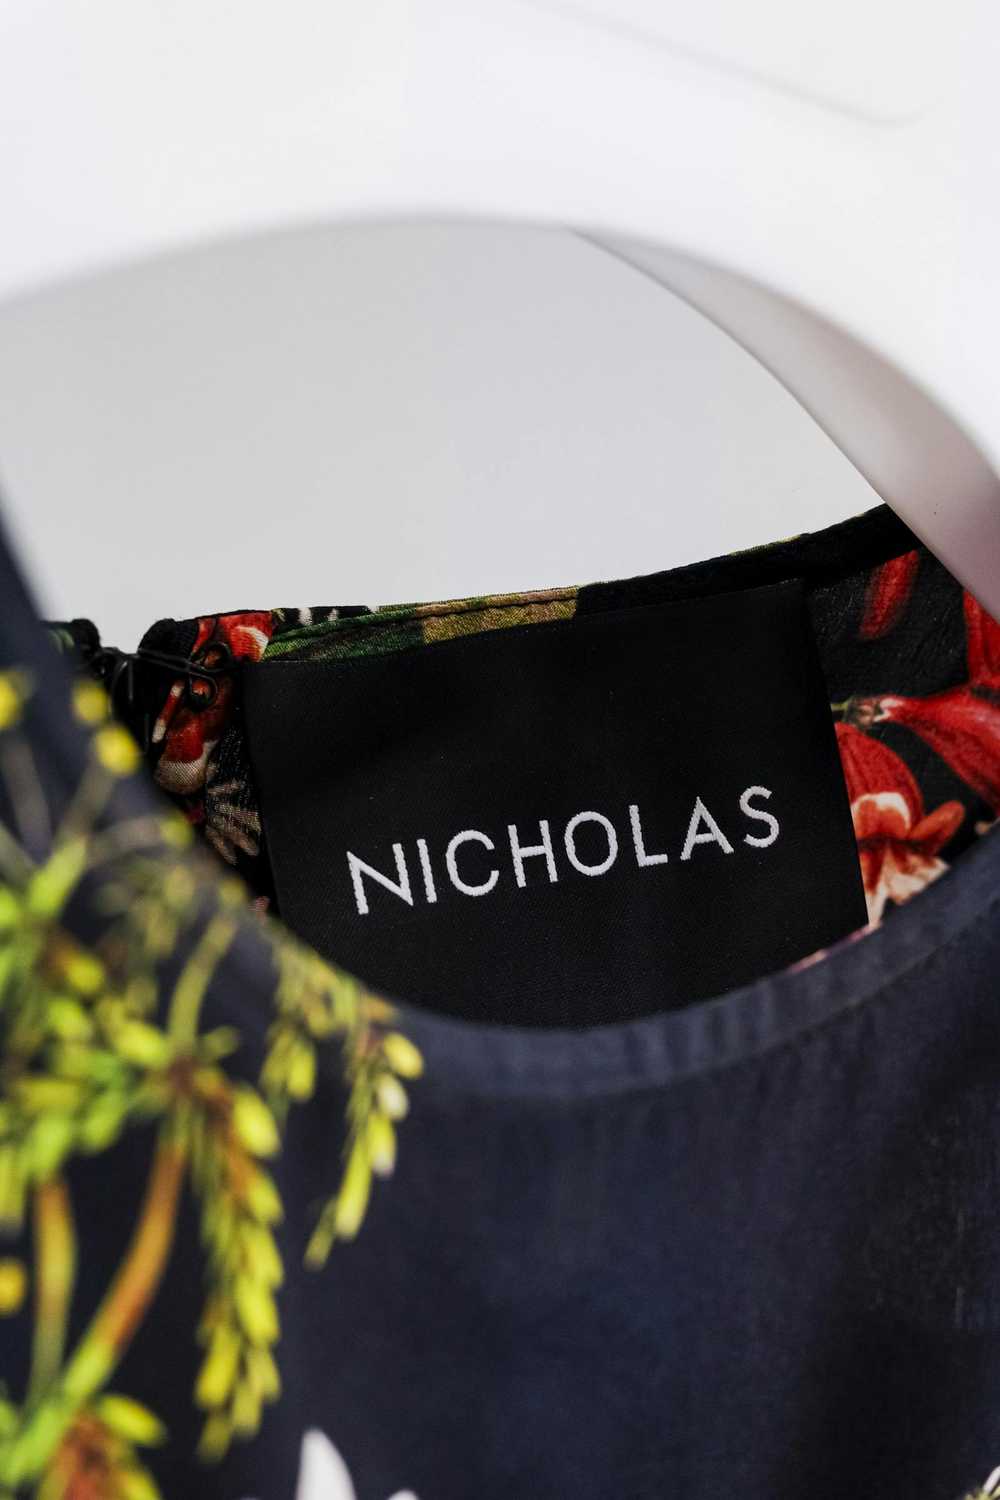 Designer Nicholas Dahlia Floral Ruffle Dress - image 5